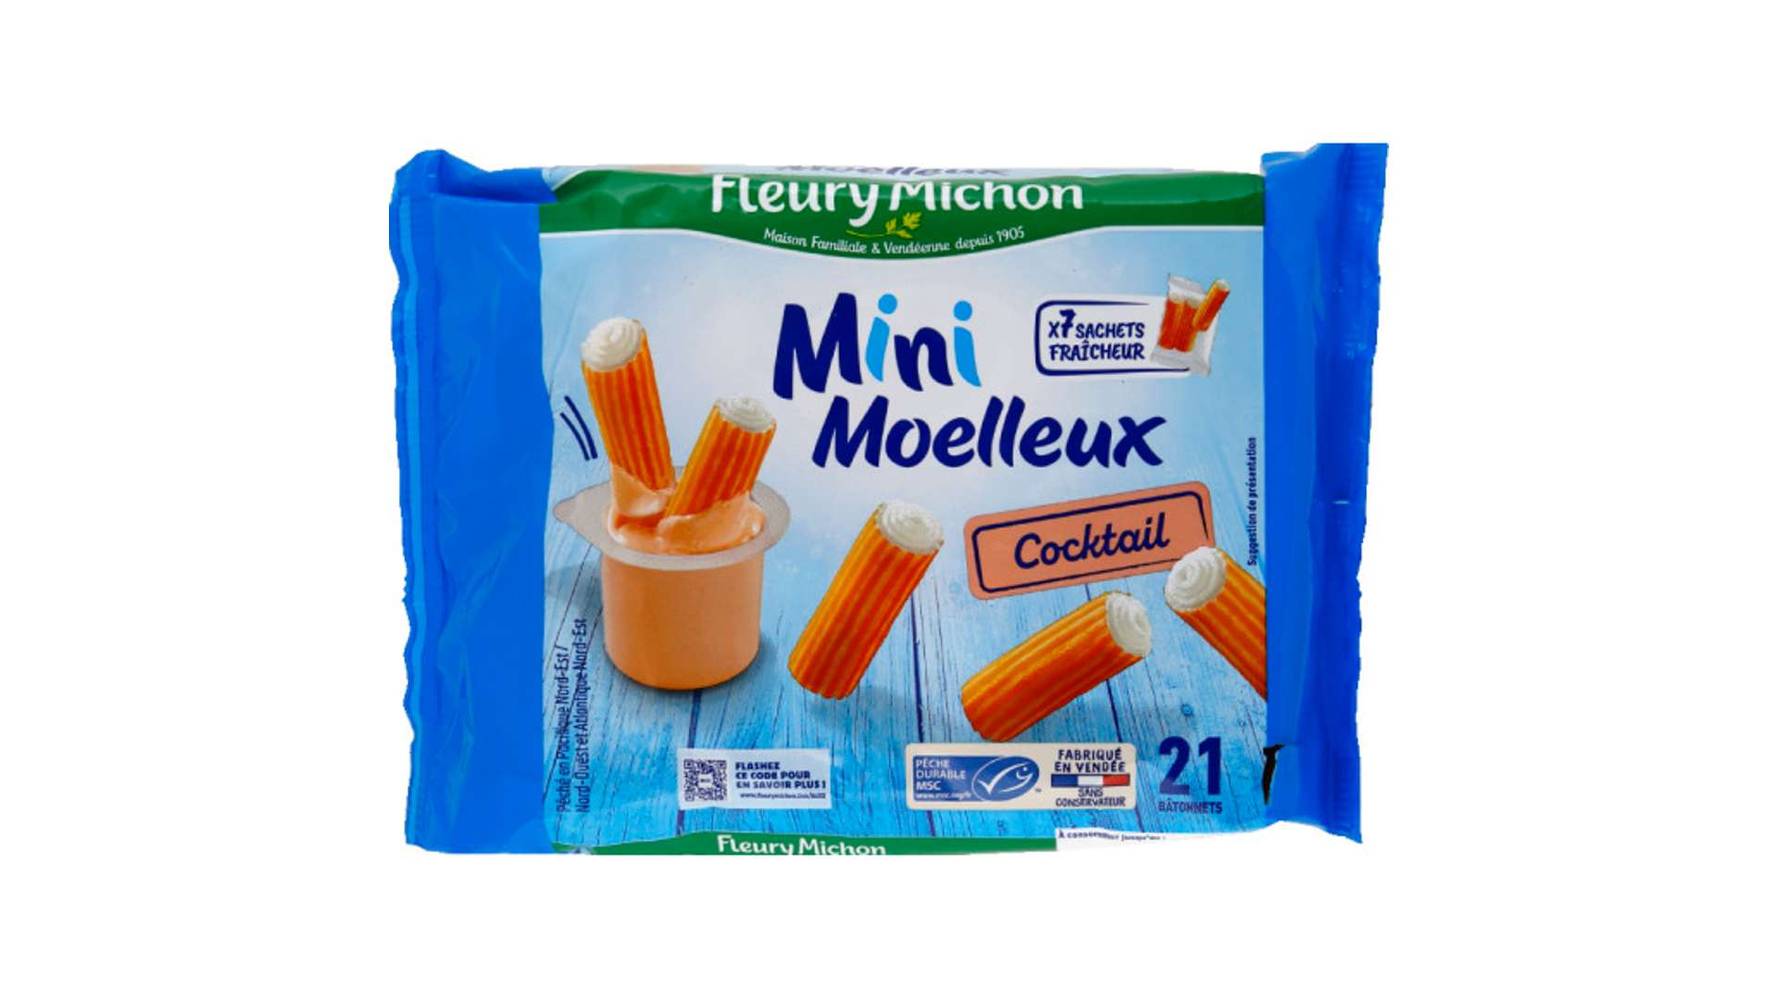 Fleury Michon Mini bâtonnets surimi moelleux cocktail fleury michon Le paquet de 21